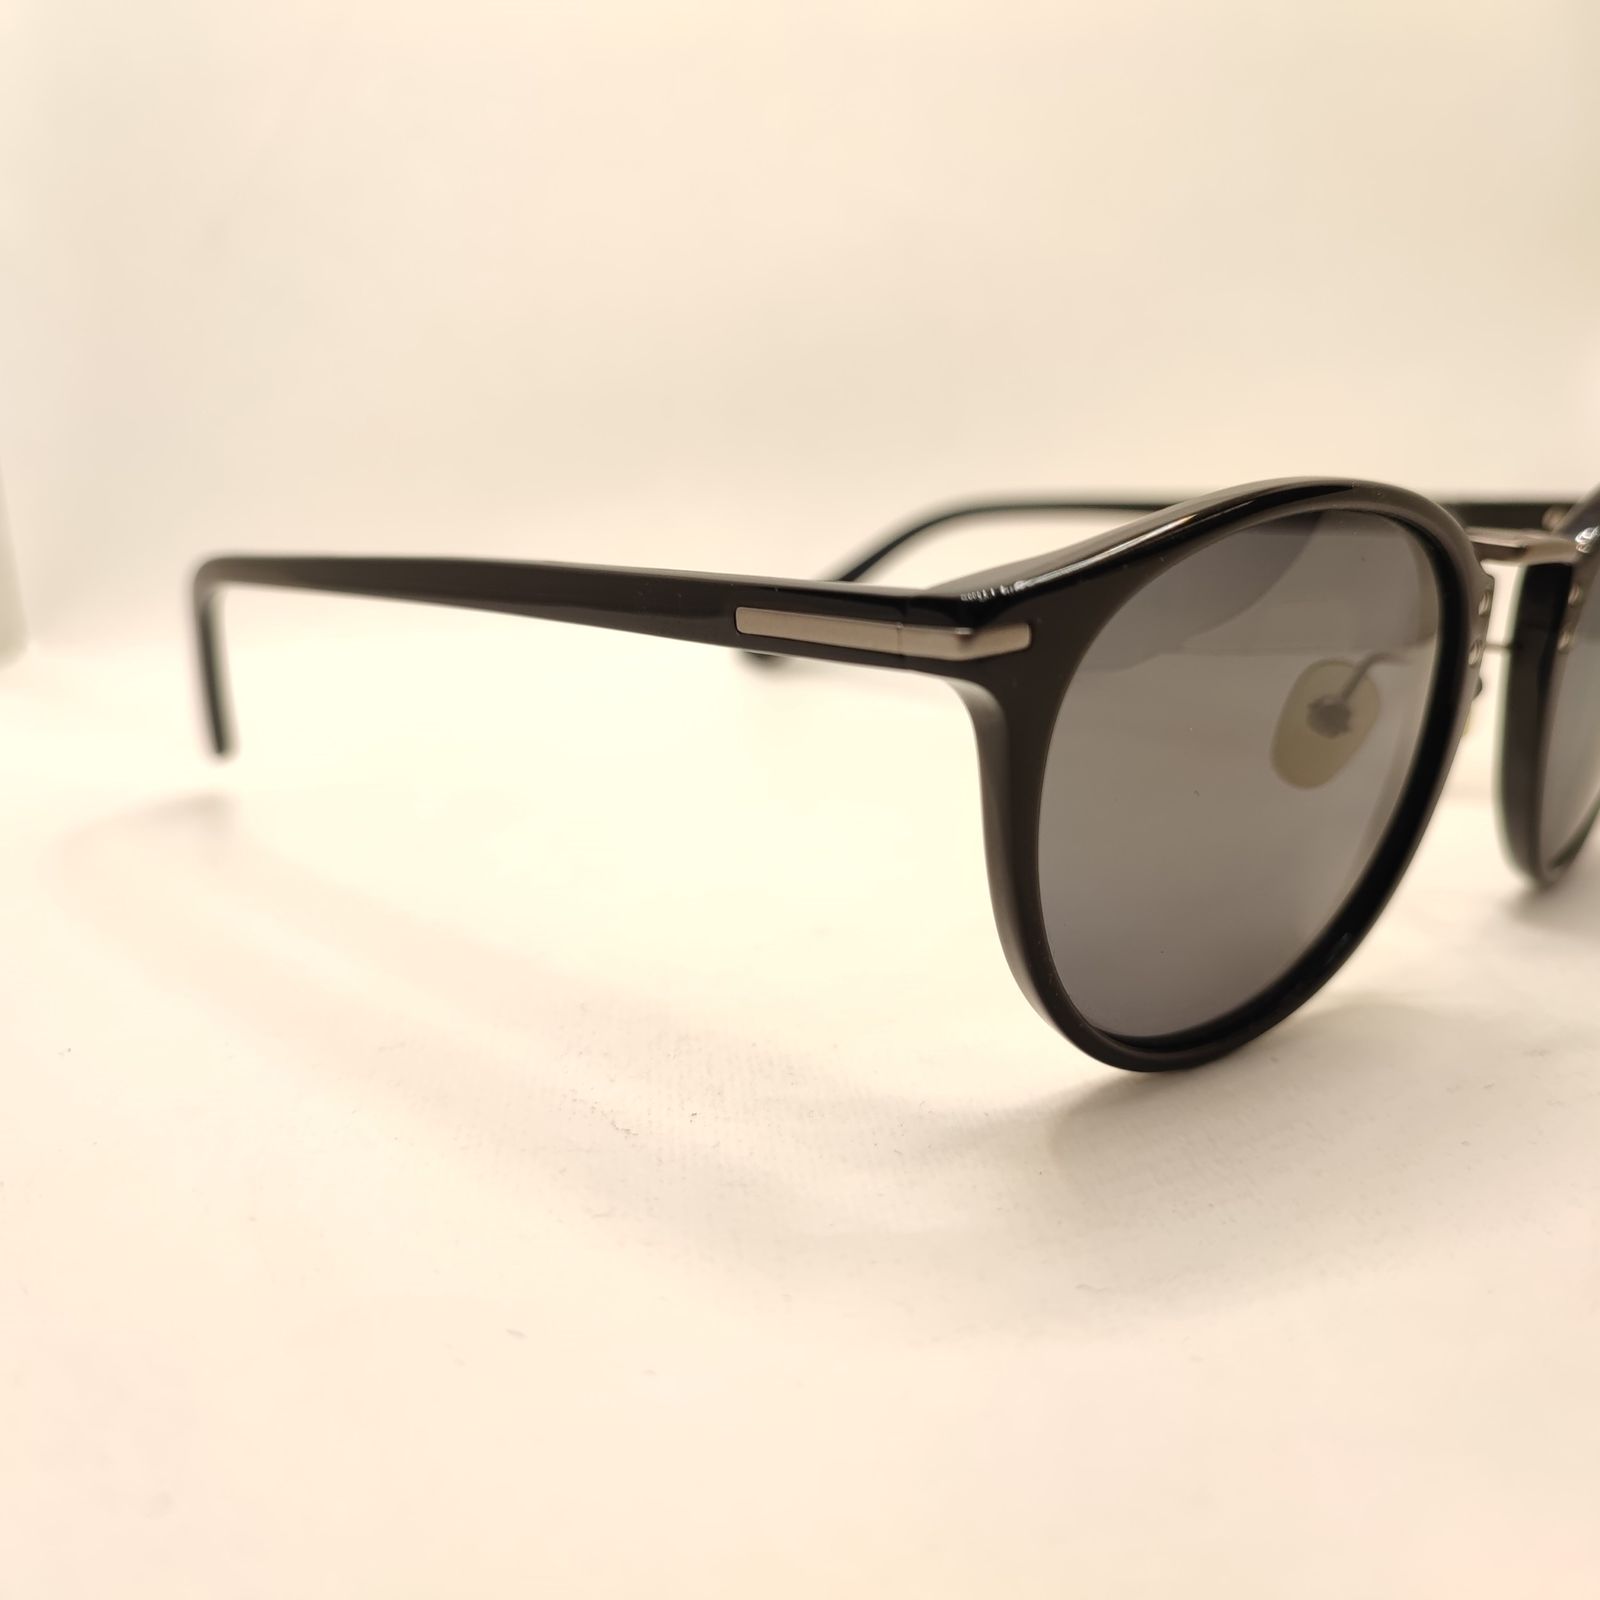 عینک آفتابی کلارک بای تروی کولیزوم مدل K986 -  - 3